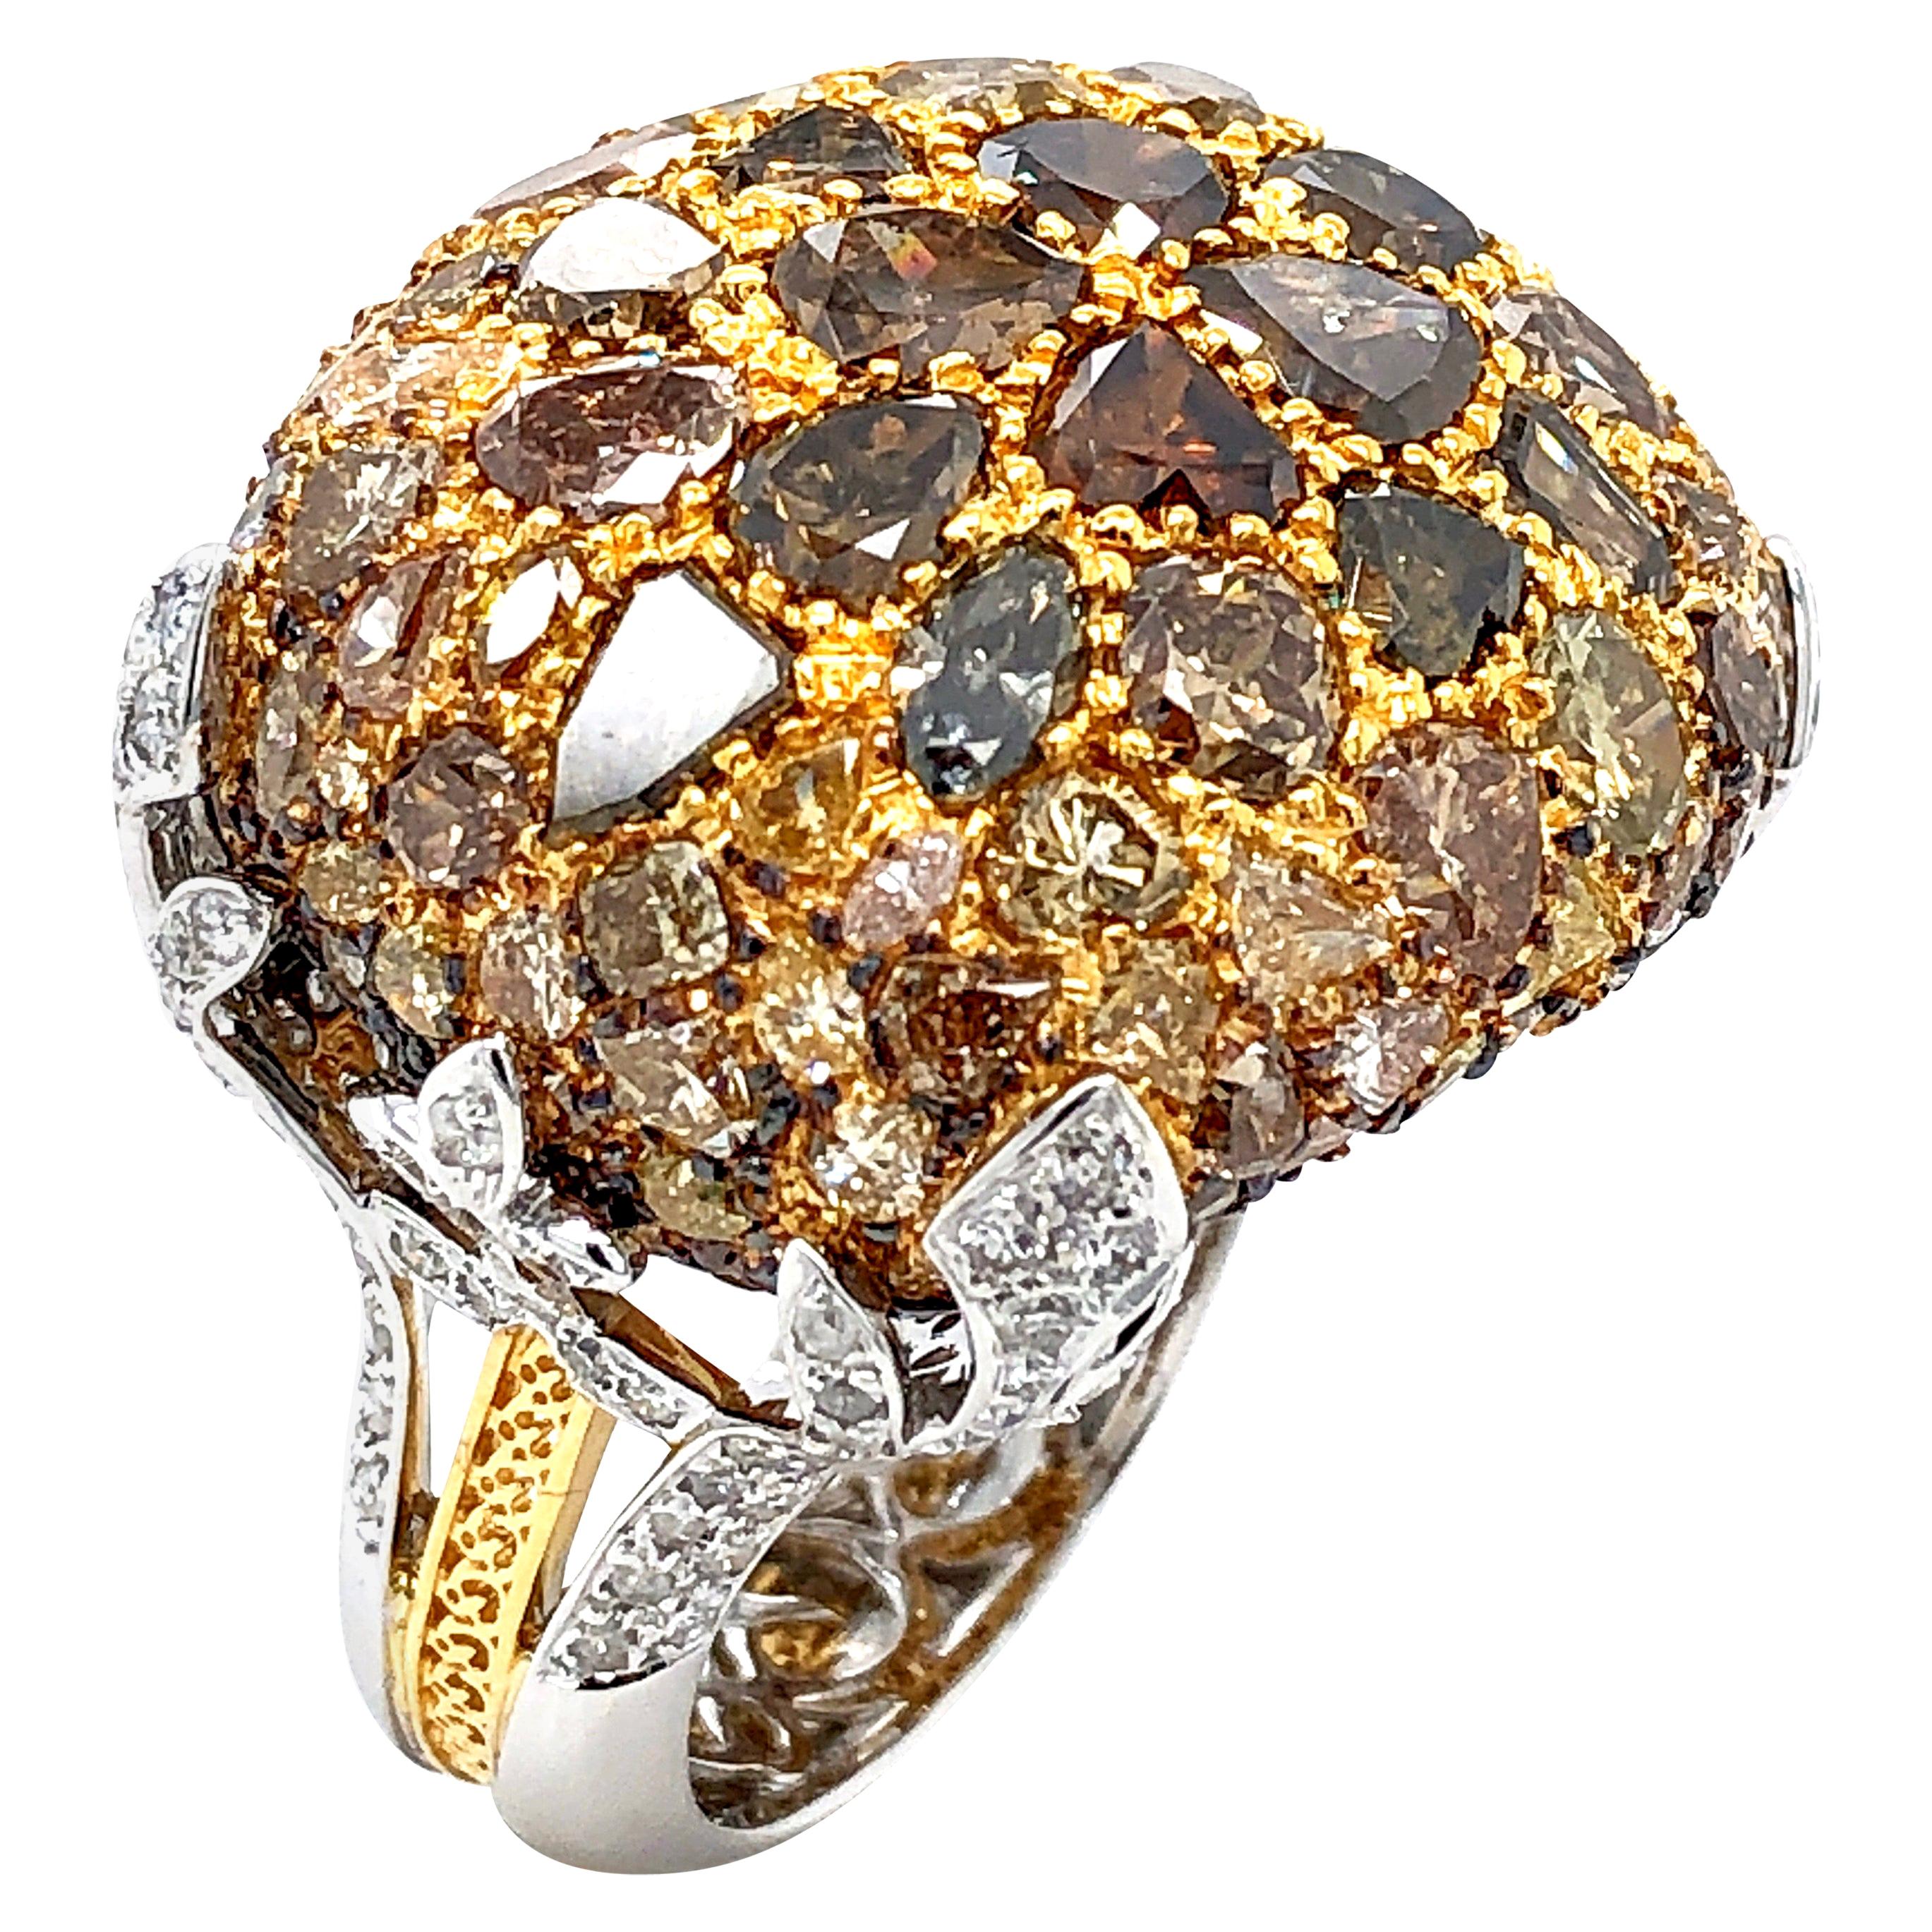 Royal Cushion Statement-Ring aus gemischt geschliffenen farbigen Diamanten in 18 Karat Gold